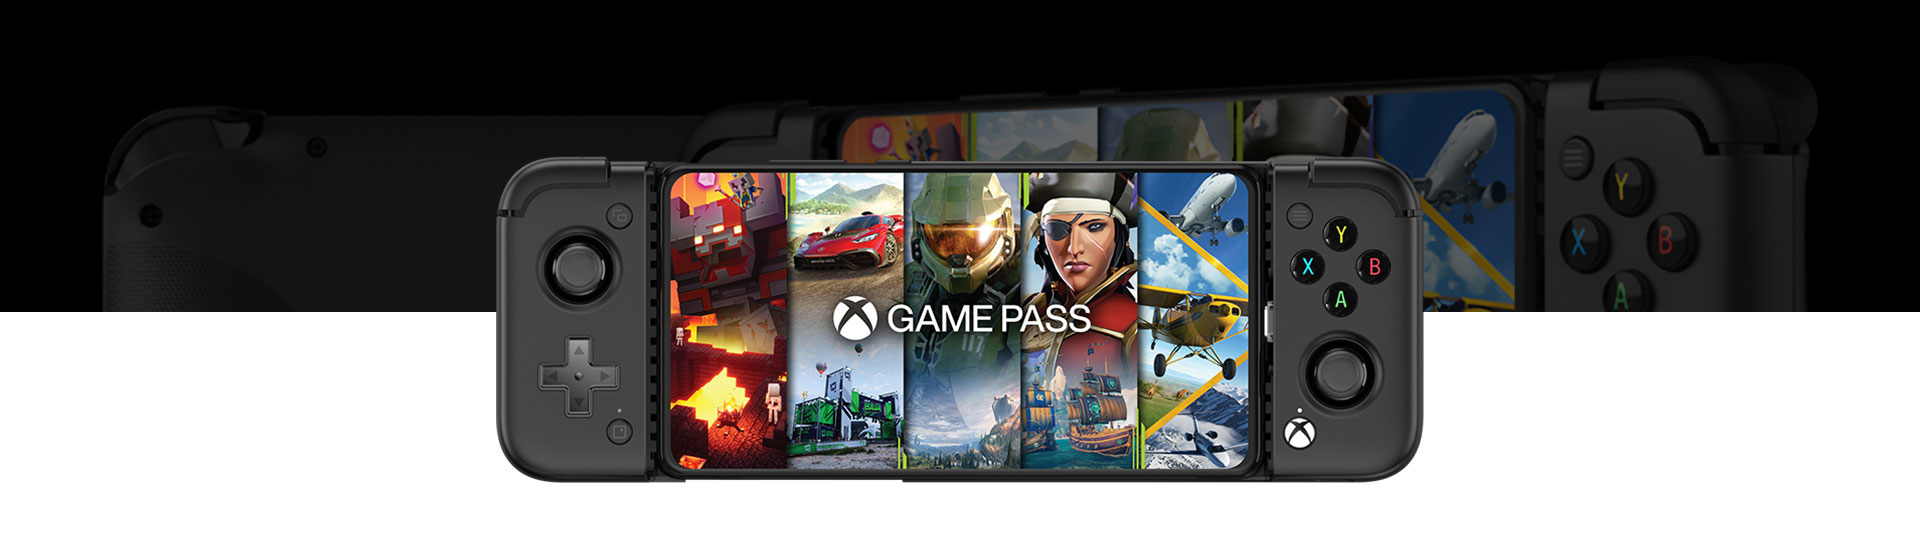 Ansicht des GameSir X2 Pro Mobile Gaming Controllers mit Game Pass auf dem Bildschirm von vorne